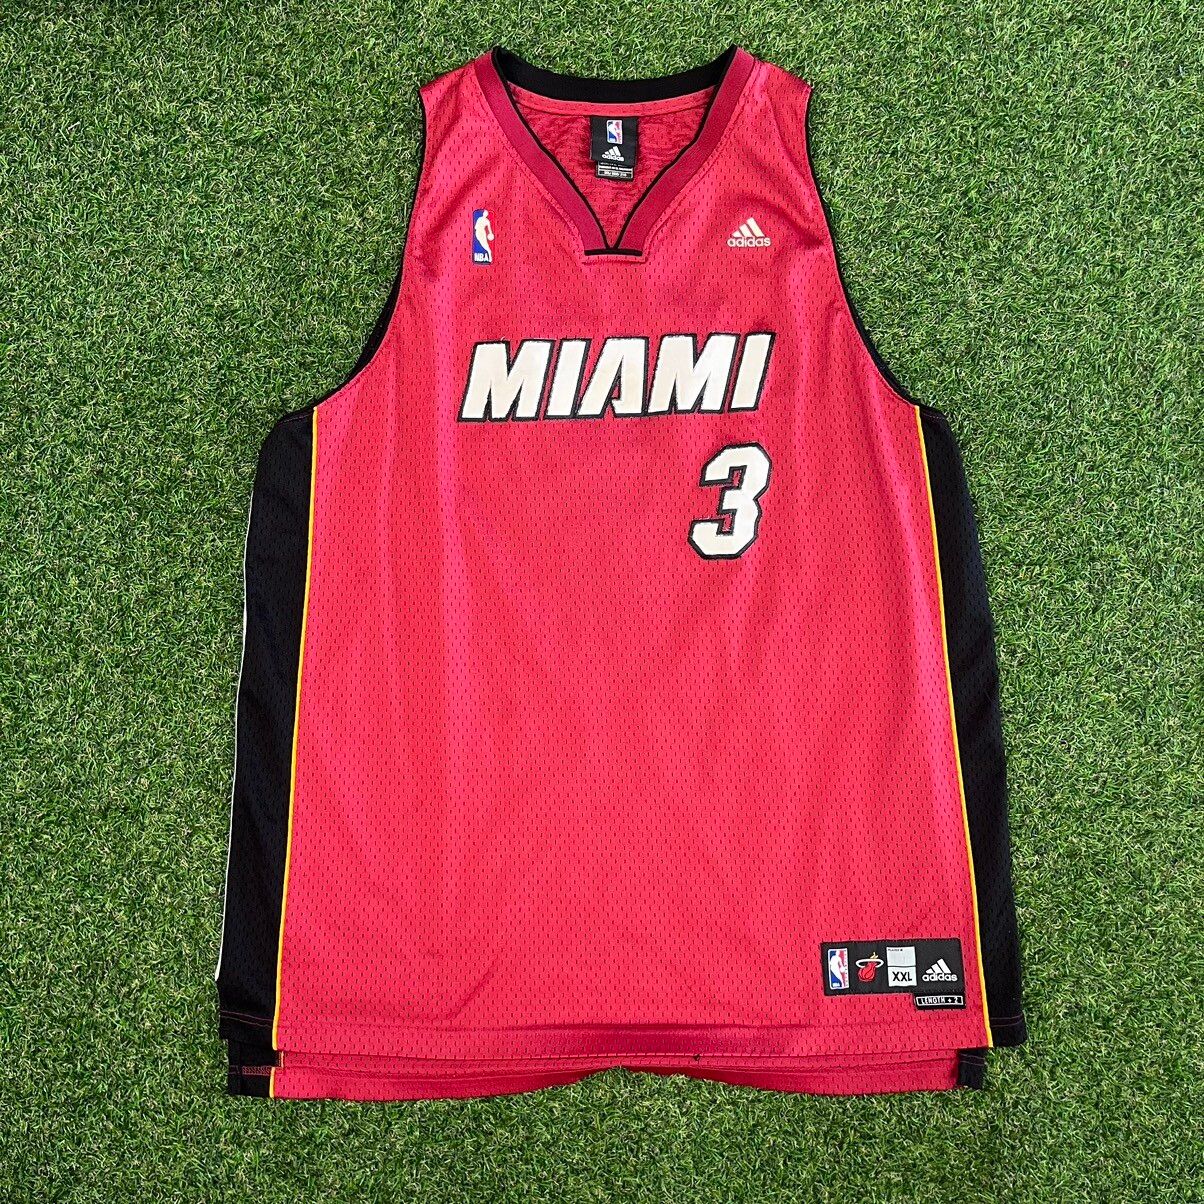 Adidas Miami Heat Dwyane Wade #3 Jersey Size US XXL / EU 58 / 5 - 1 Preview